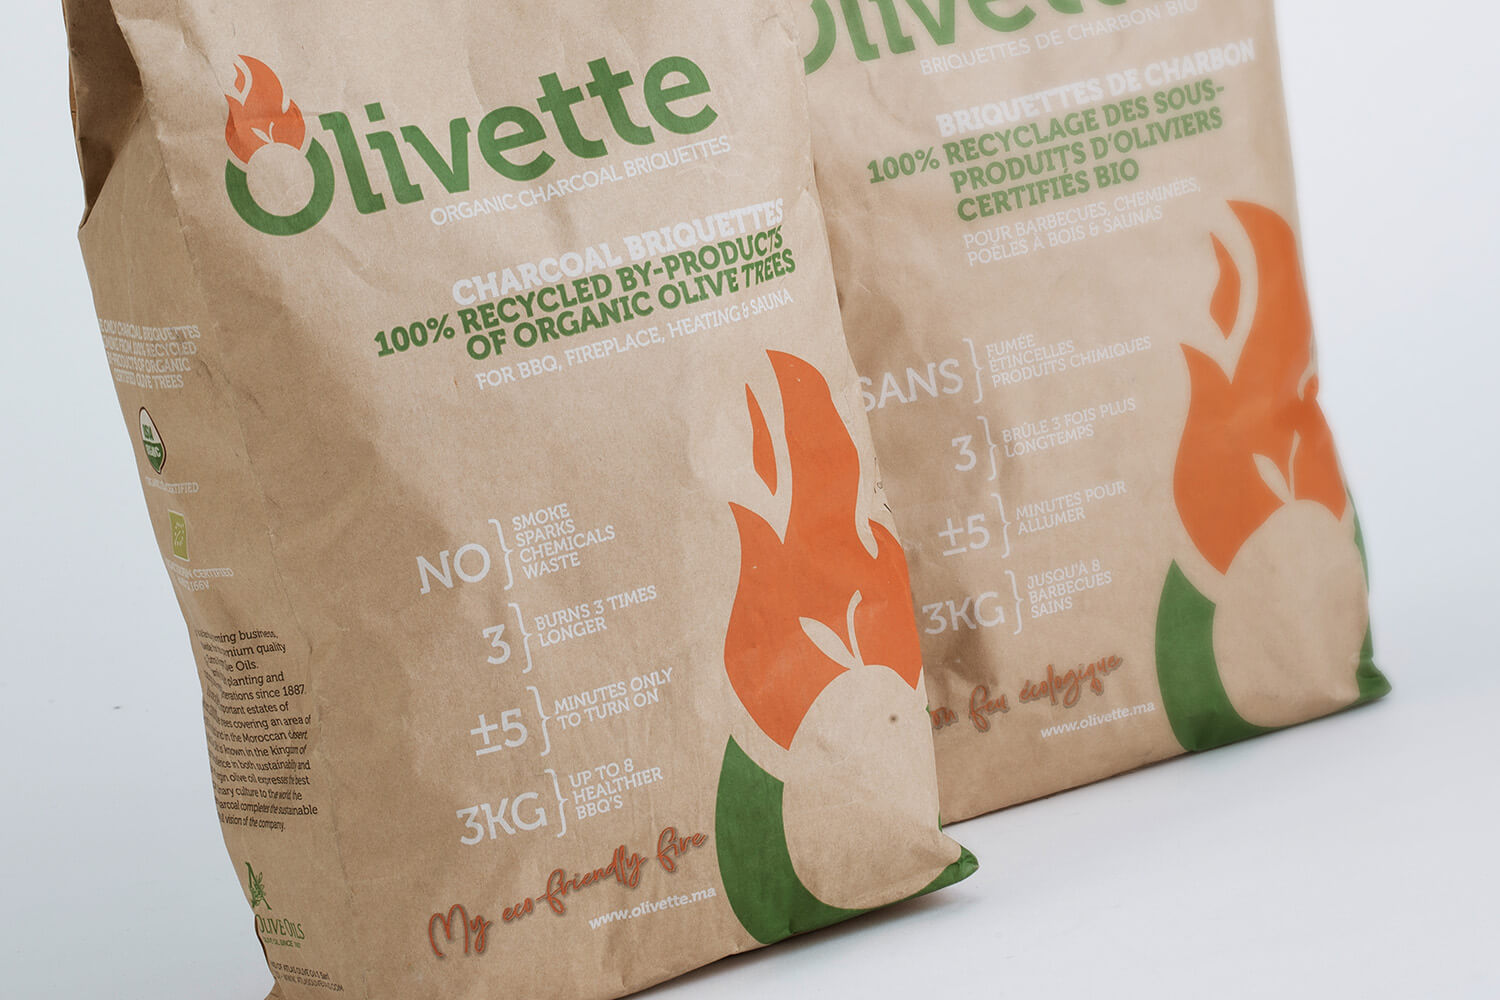 OLIVETTE Organic charcoal briquettes